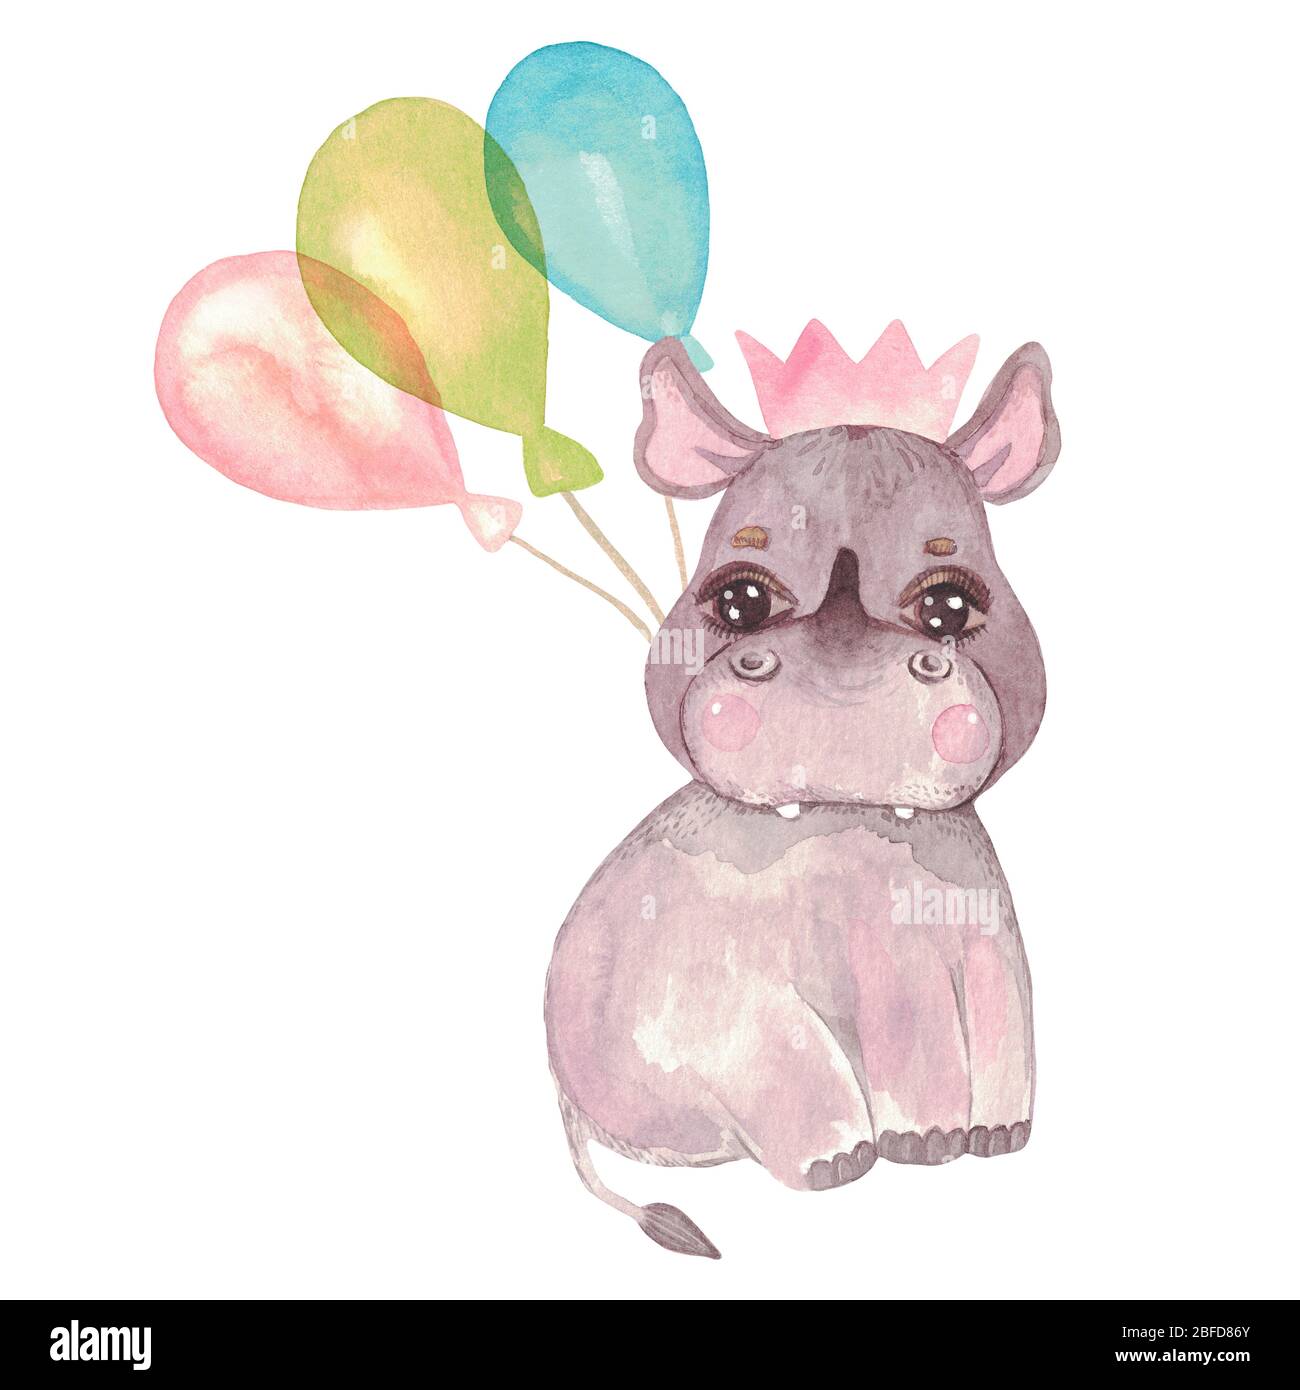 Illustration aquarelle d'un joli rhinocéros de bébé. Caractère festif dans une couronne, un noeud, un ballon. Safari animal pour cartes d'invitation, douche de bébé, nurser Banque D'Images